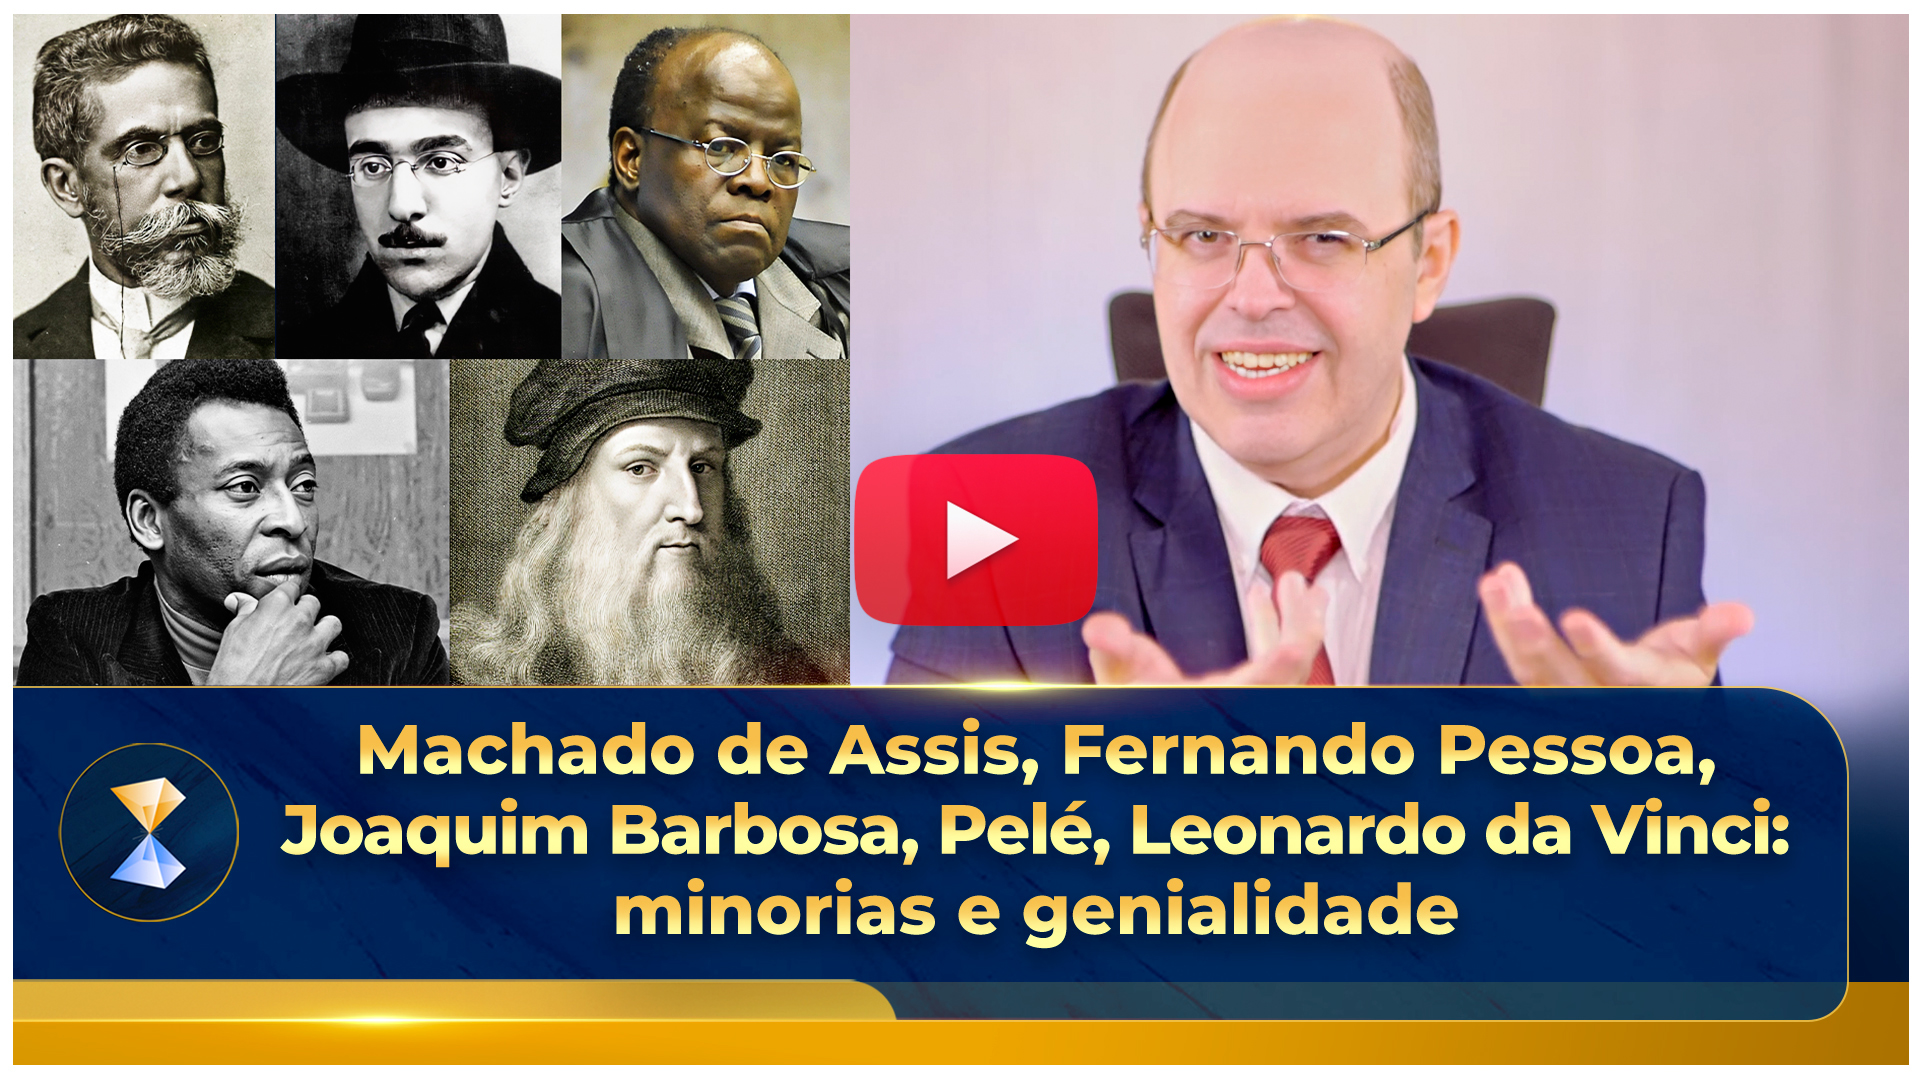 Machado de Assis, Fernando Pessoa, Joaquim Barbosa, Pelé, Leonardo da Vinci: minorias e genialidade